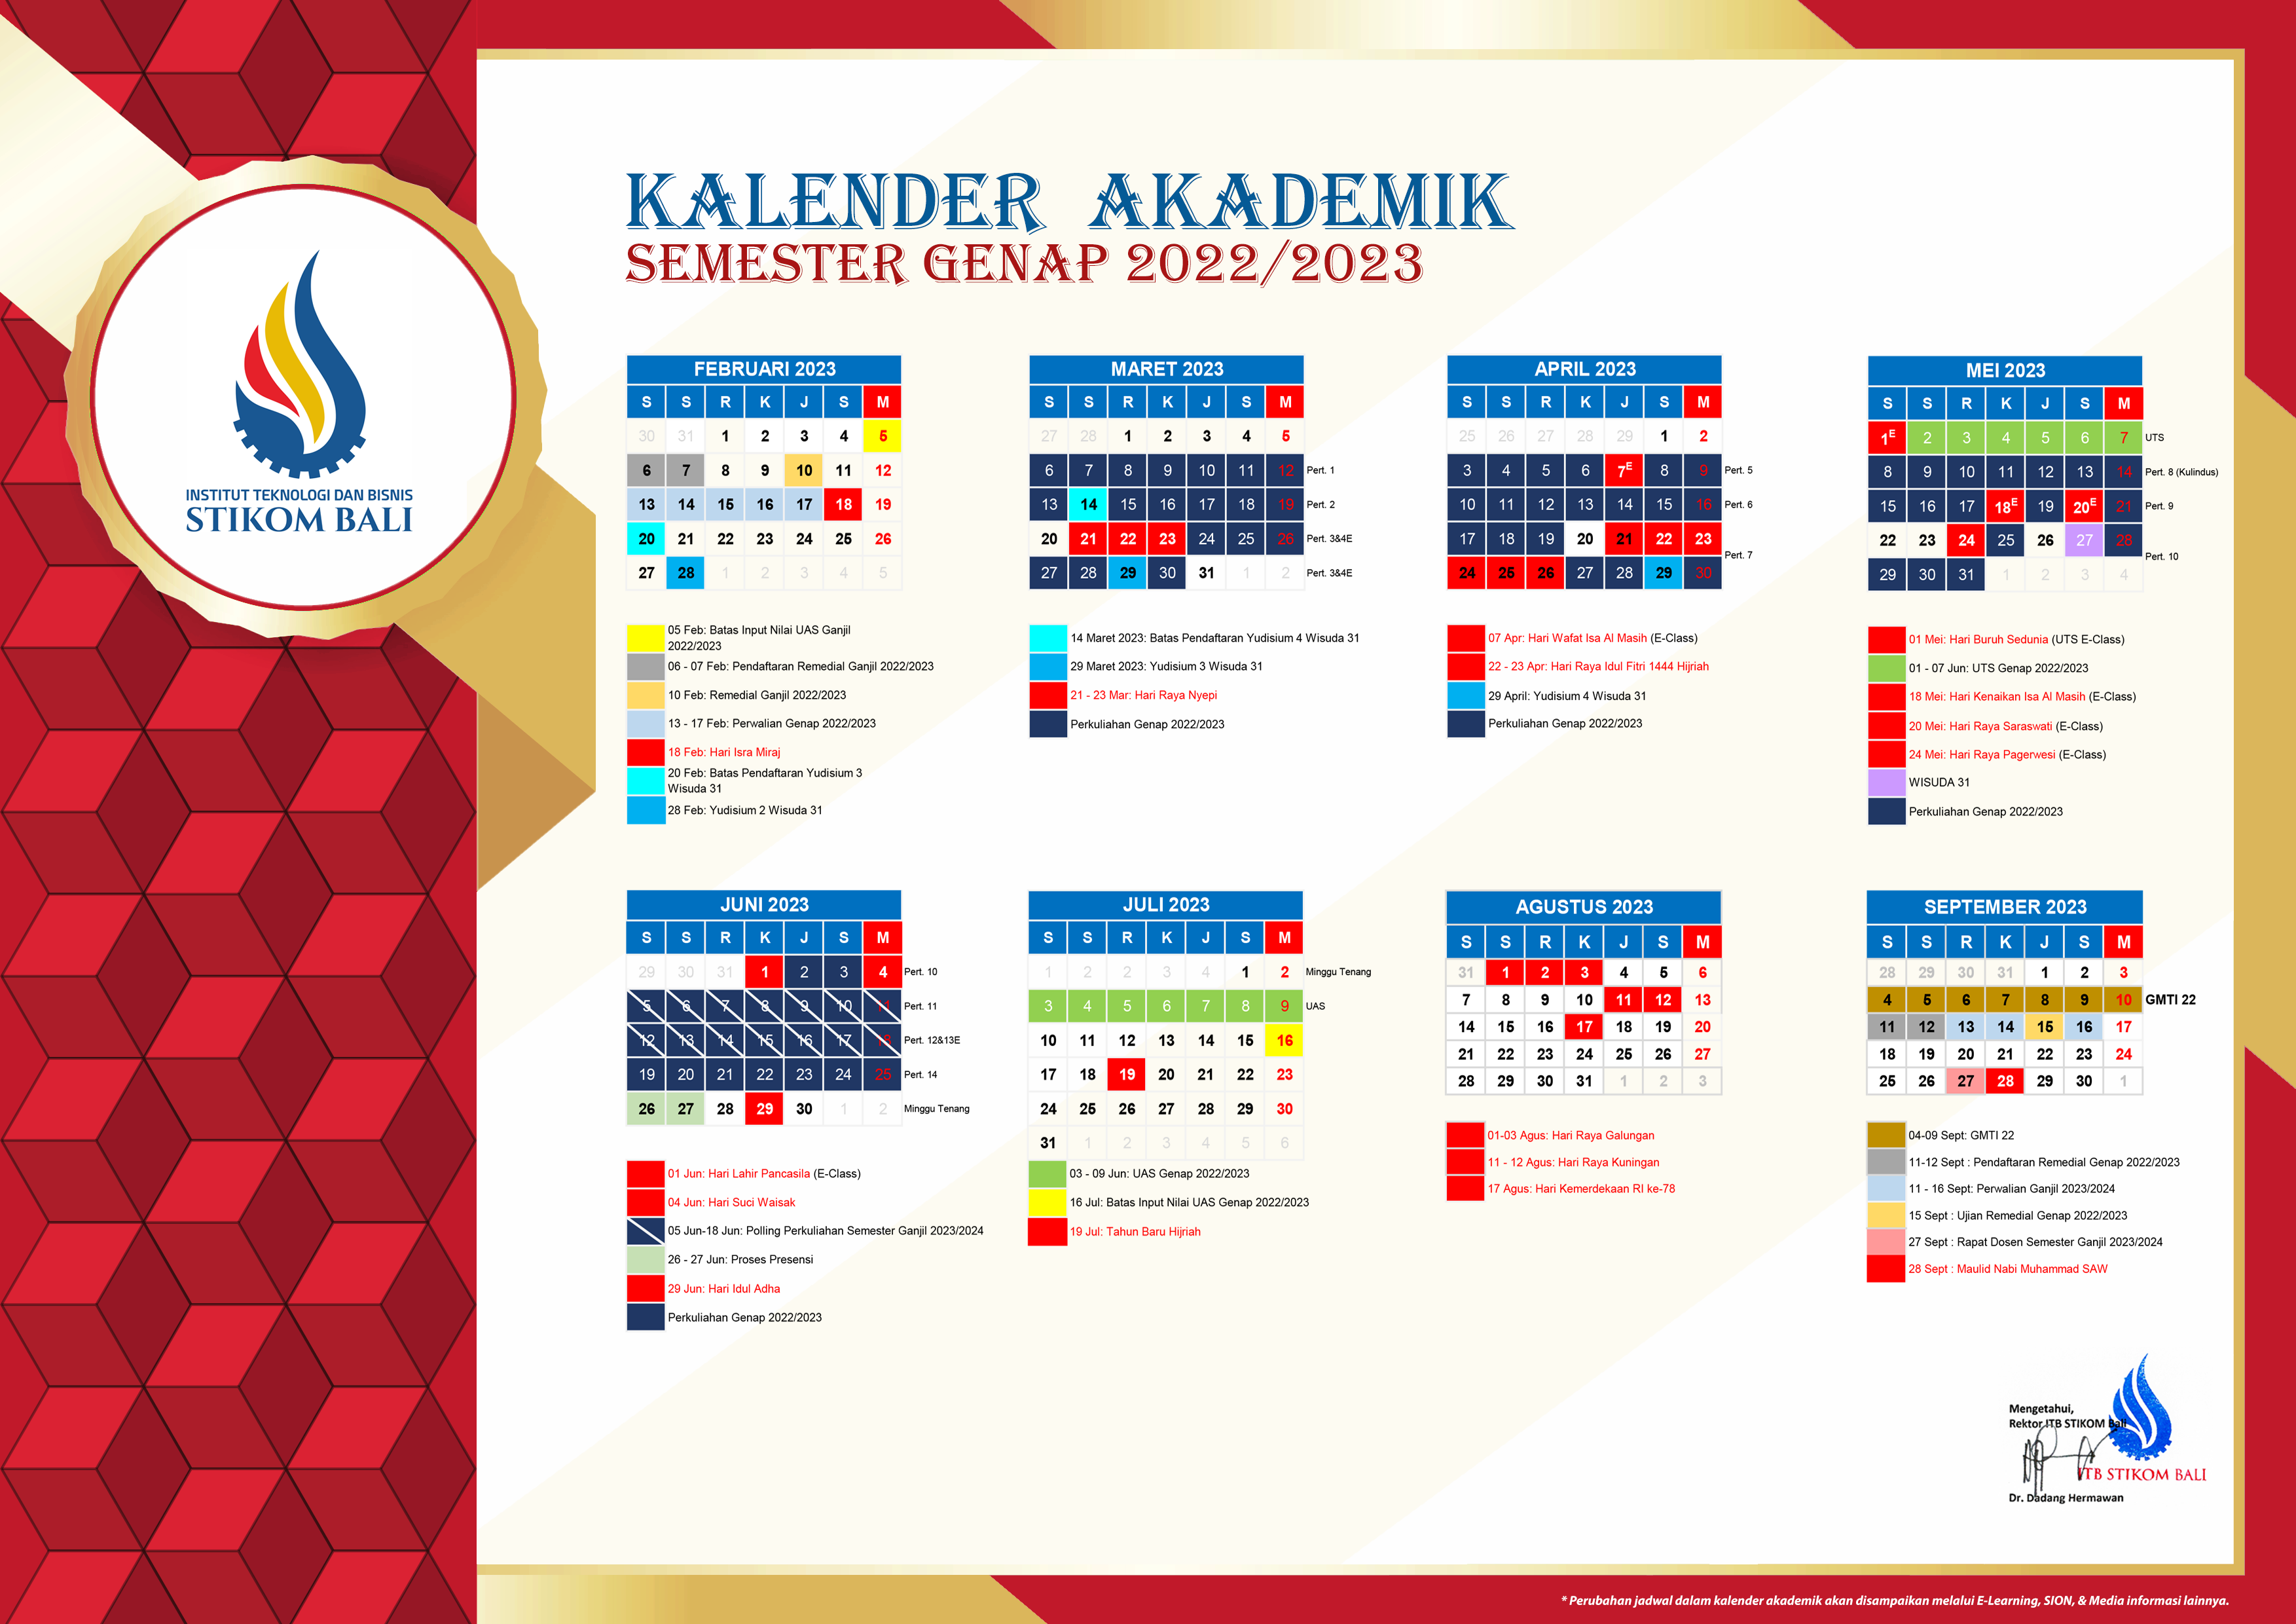 Kalender Akademik Semester Genap 2022-2023 genap.png